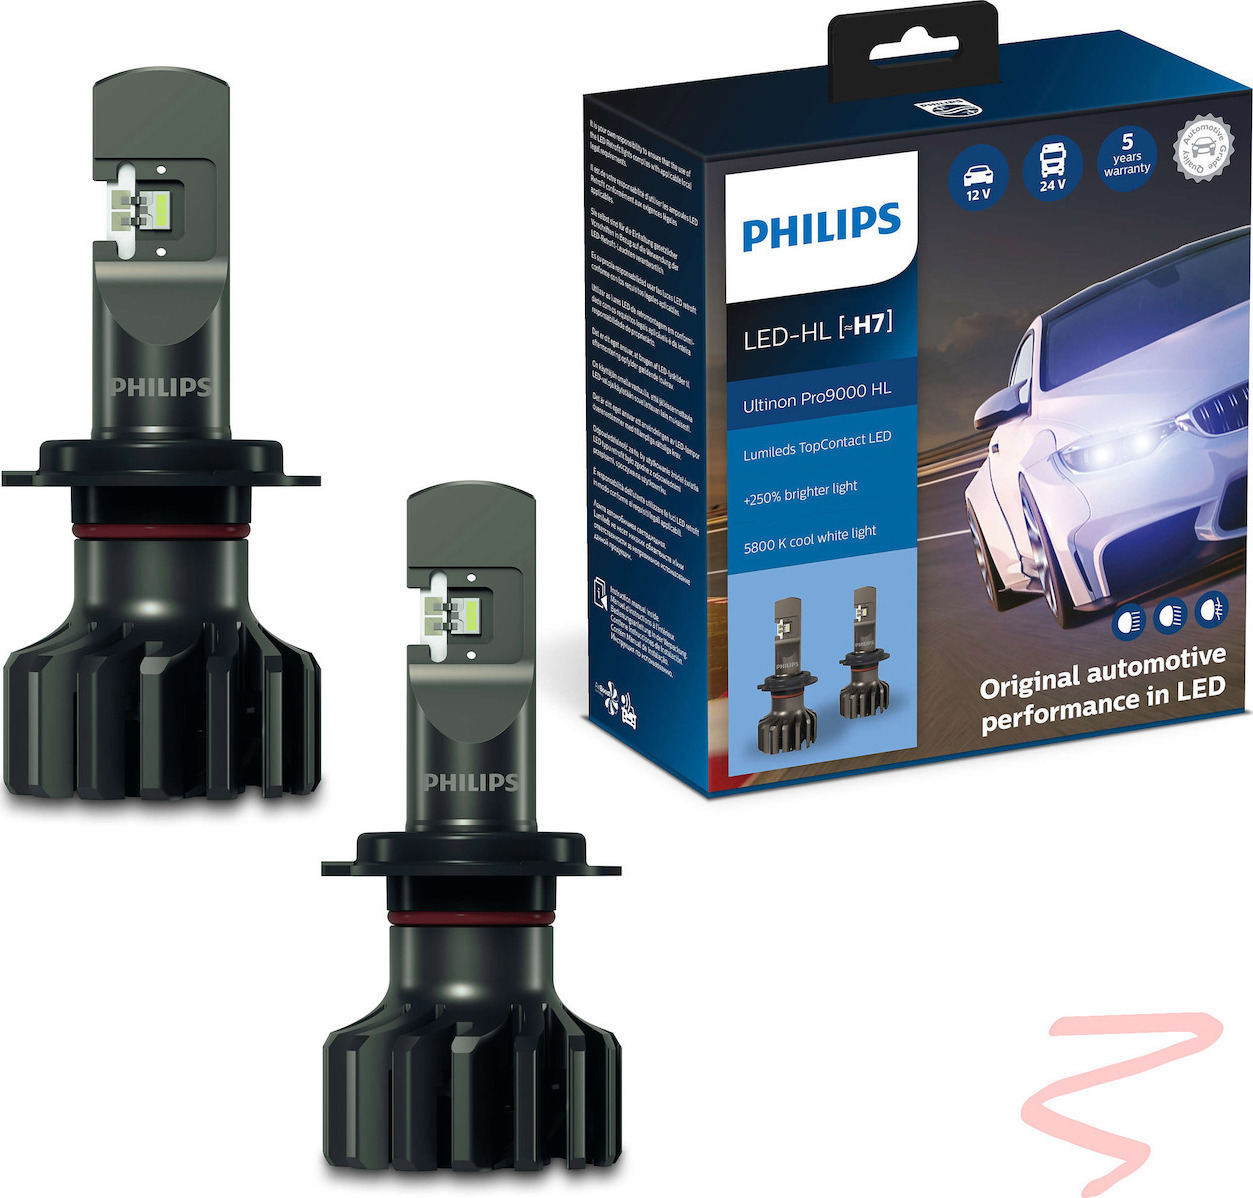 Philips Ultinon Pro9000 Car H7 Light Bulb LED 5800K Cold White 13.2V 18W  2pcs 11972U90CWX2